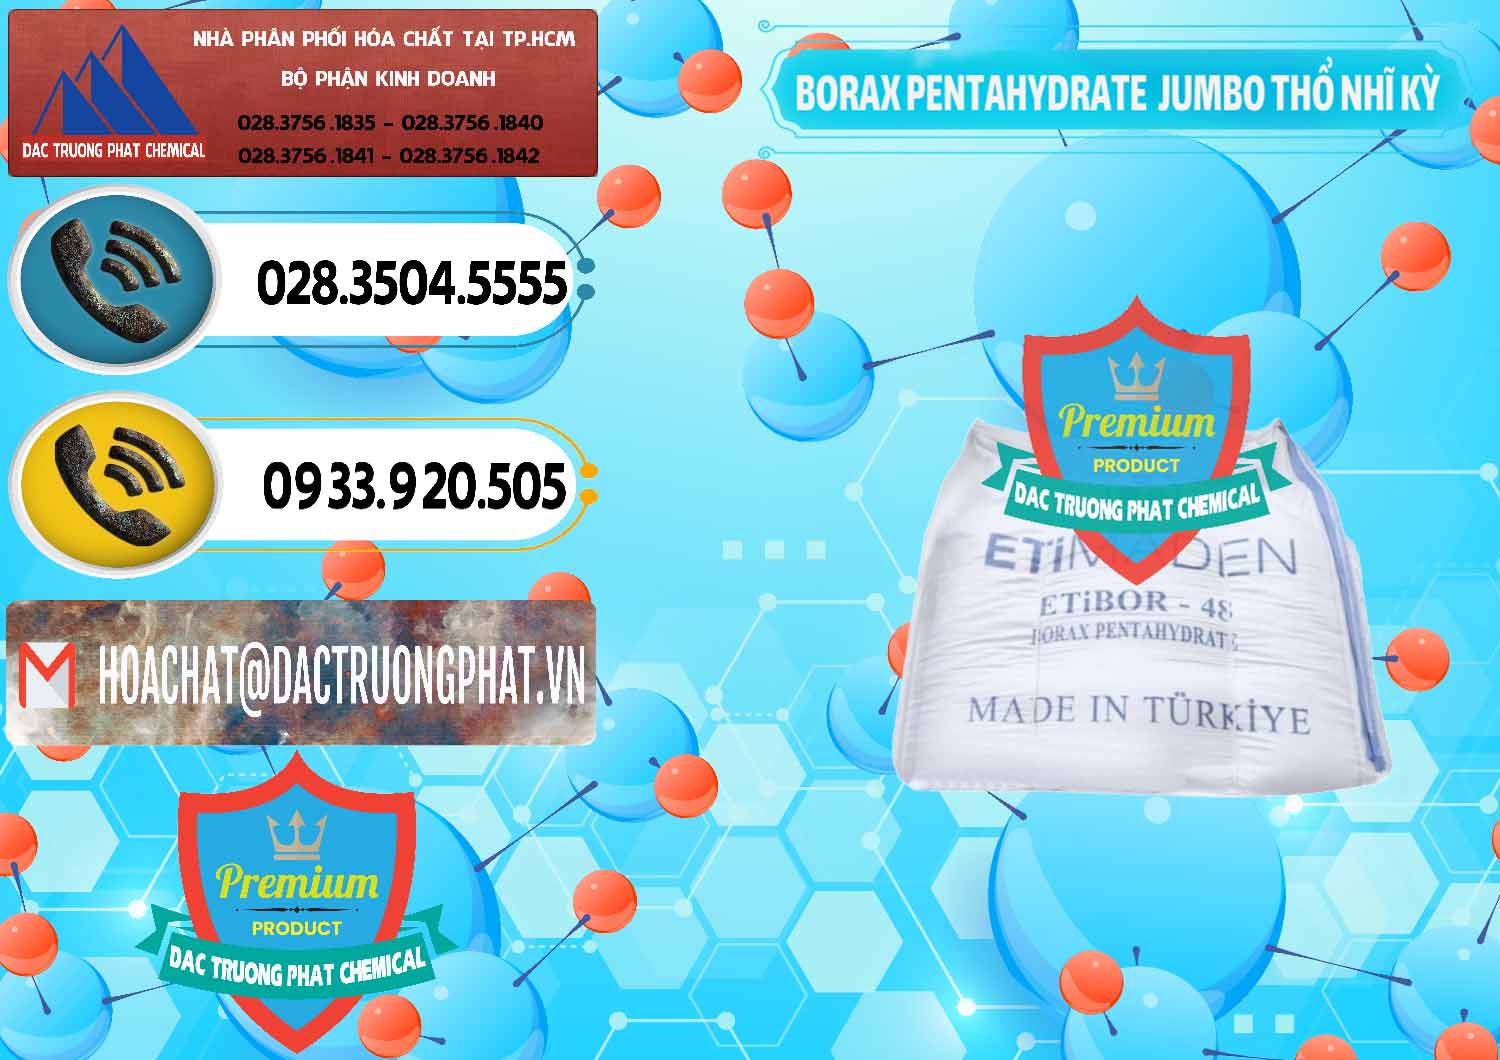 Cty chuyên bán và cung cấp Borax Pentahydrate Bao Jumbo ( Bành ) Thổ Nhĩ Kỳ Turkey - 0424 - Nhà cung cấp _ nhập khẩu hóa chất tại TP.HCM - hoachatdetnhuom.vn